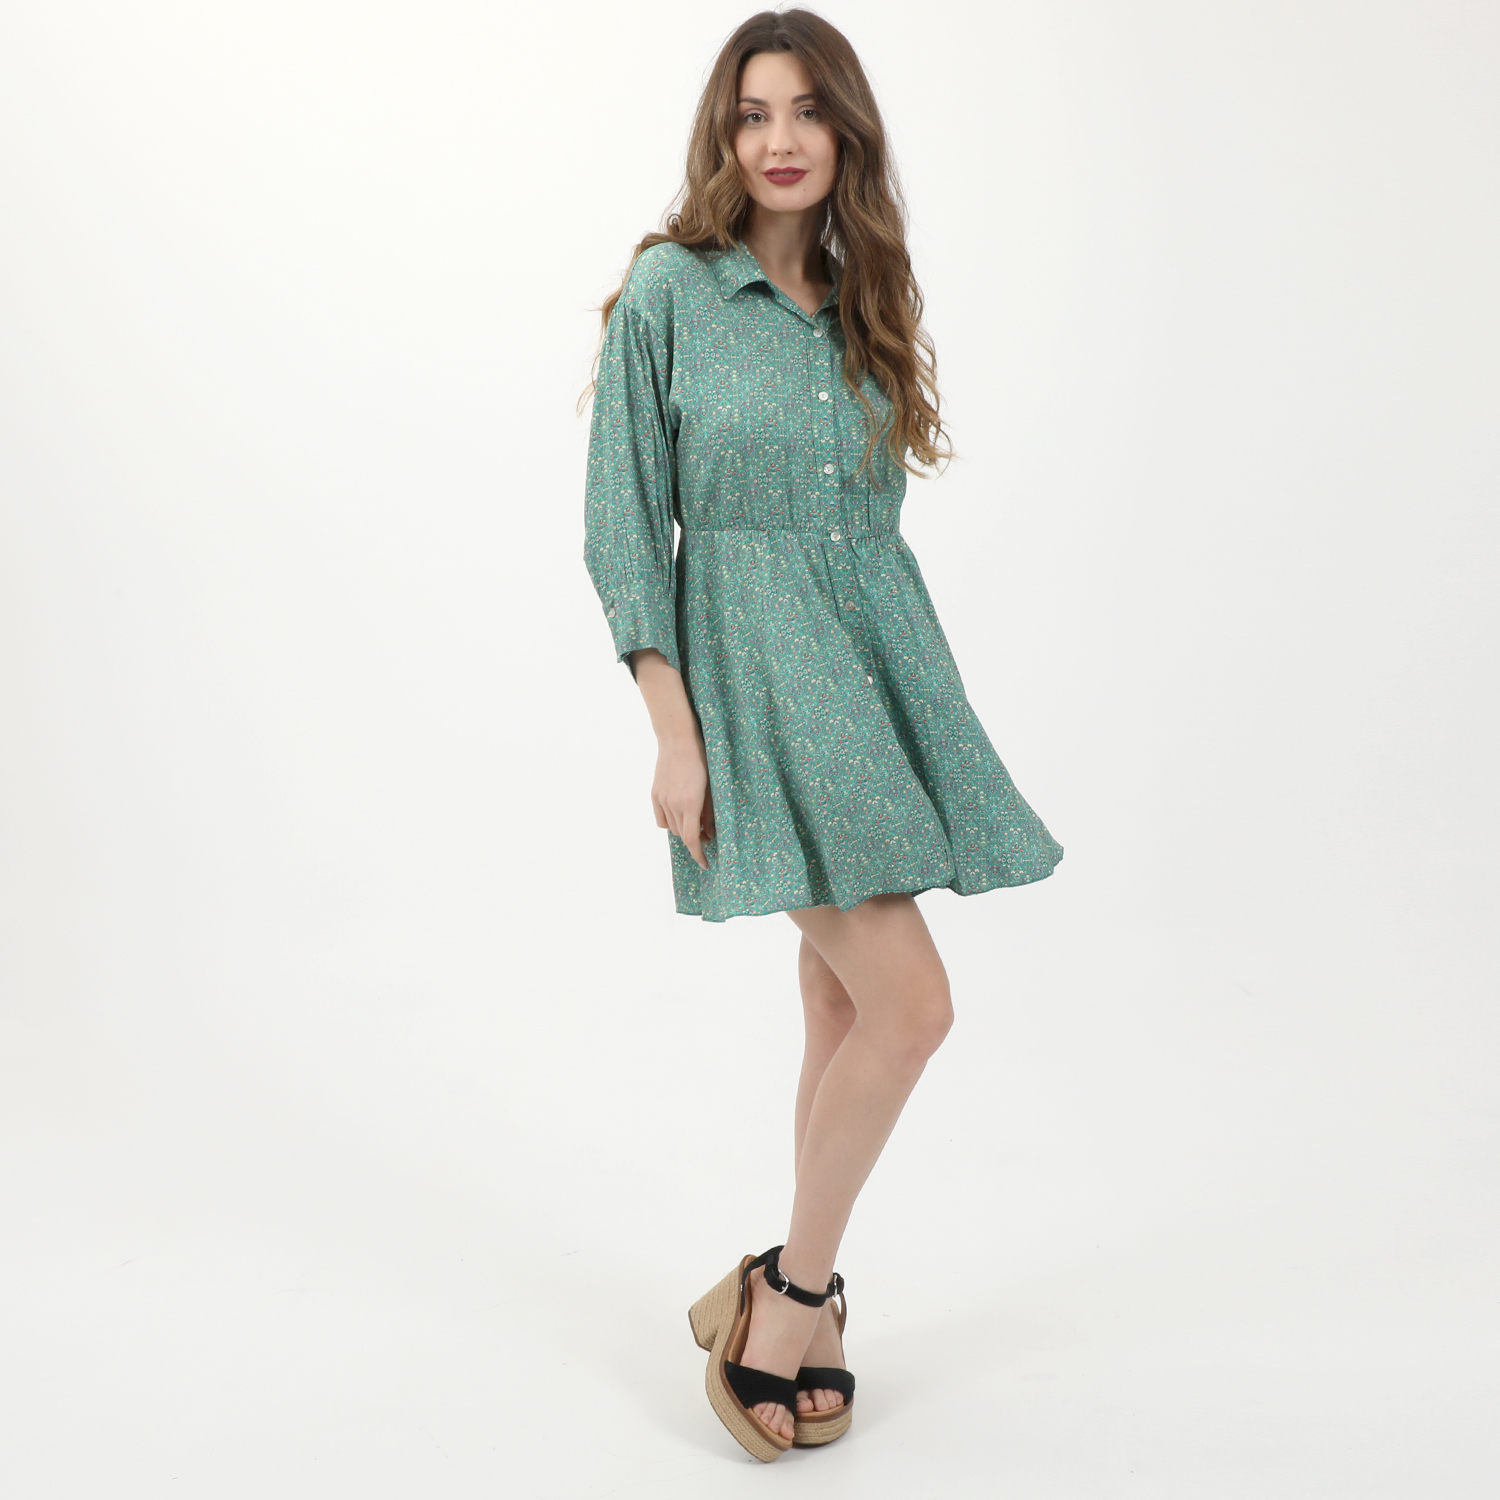 Γυναικεία/Ρούχα/Φορέματα/Μίνι ATTRATTIVO - Γυναικείο mini φόρεμα ATTRATTIVO floral πράσινο